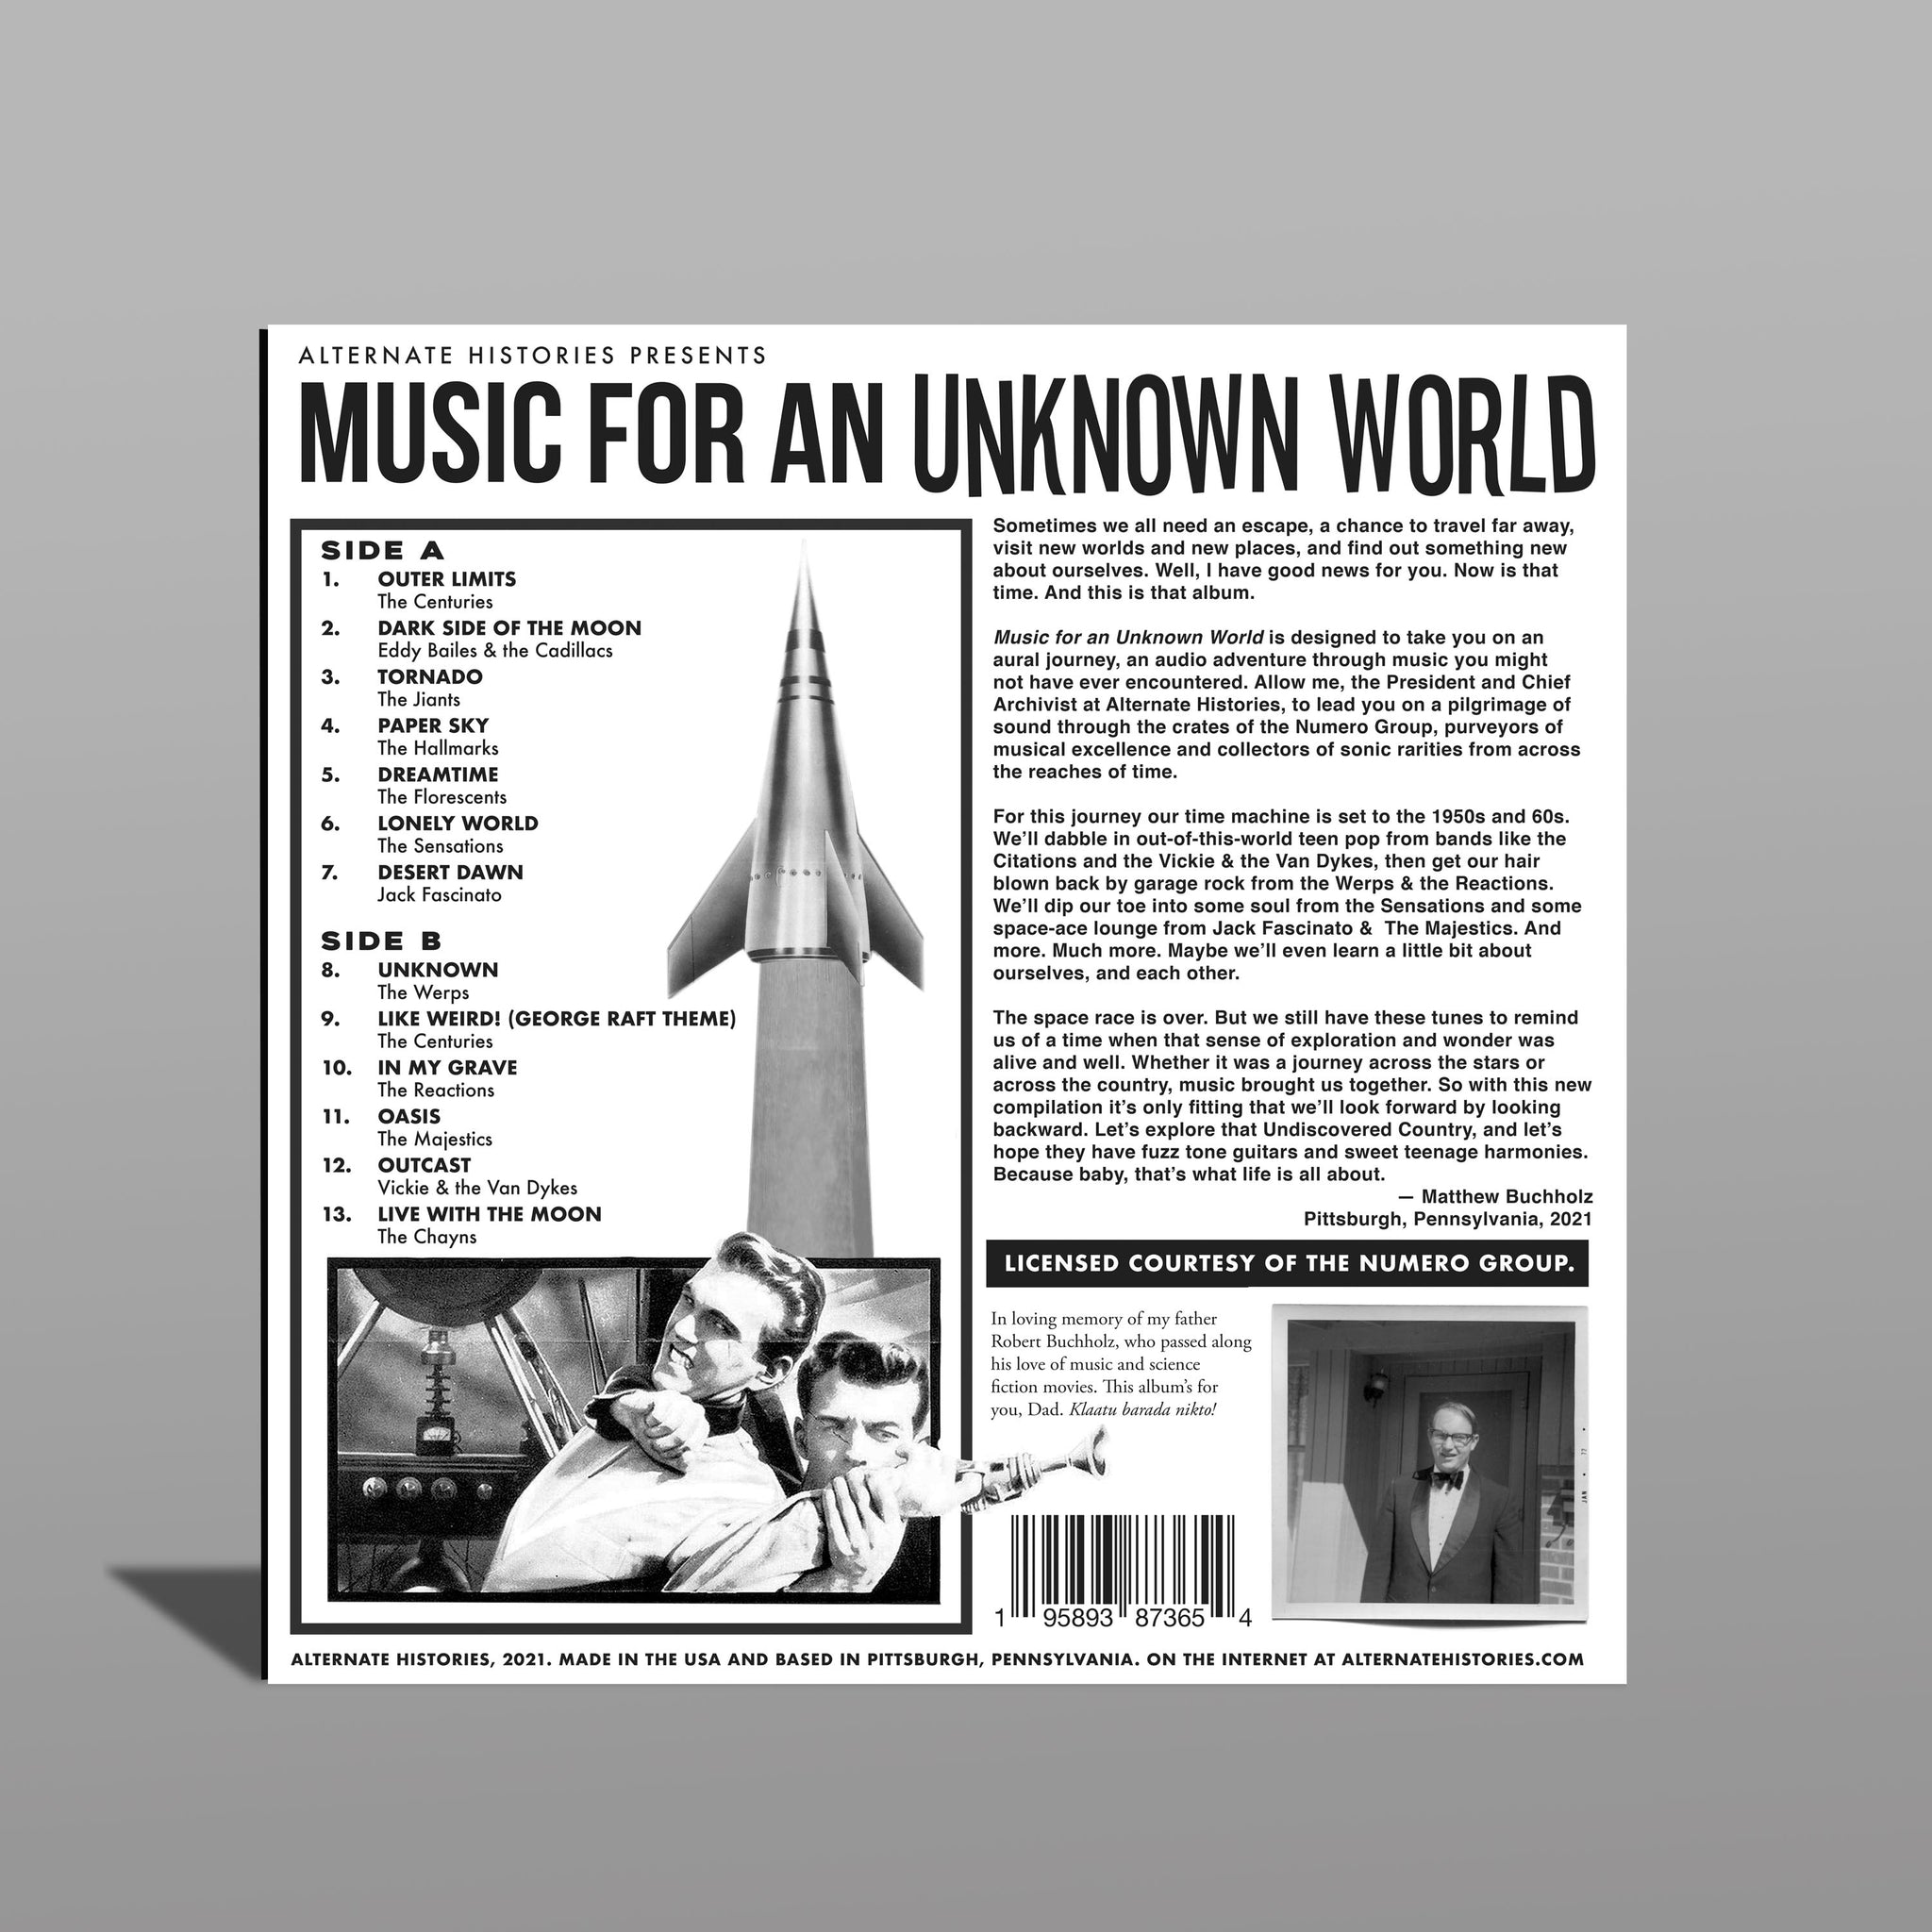 Music for an Unknown World Vinyl Album - Alternate Histories